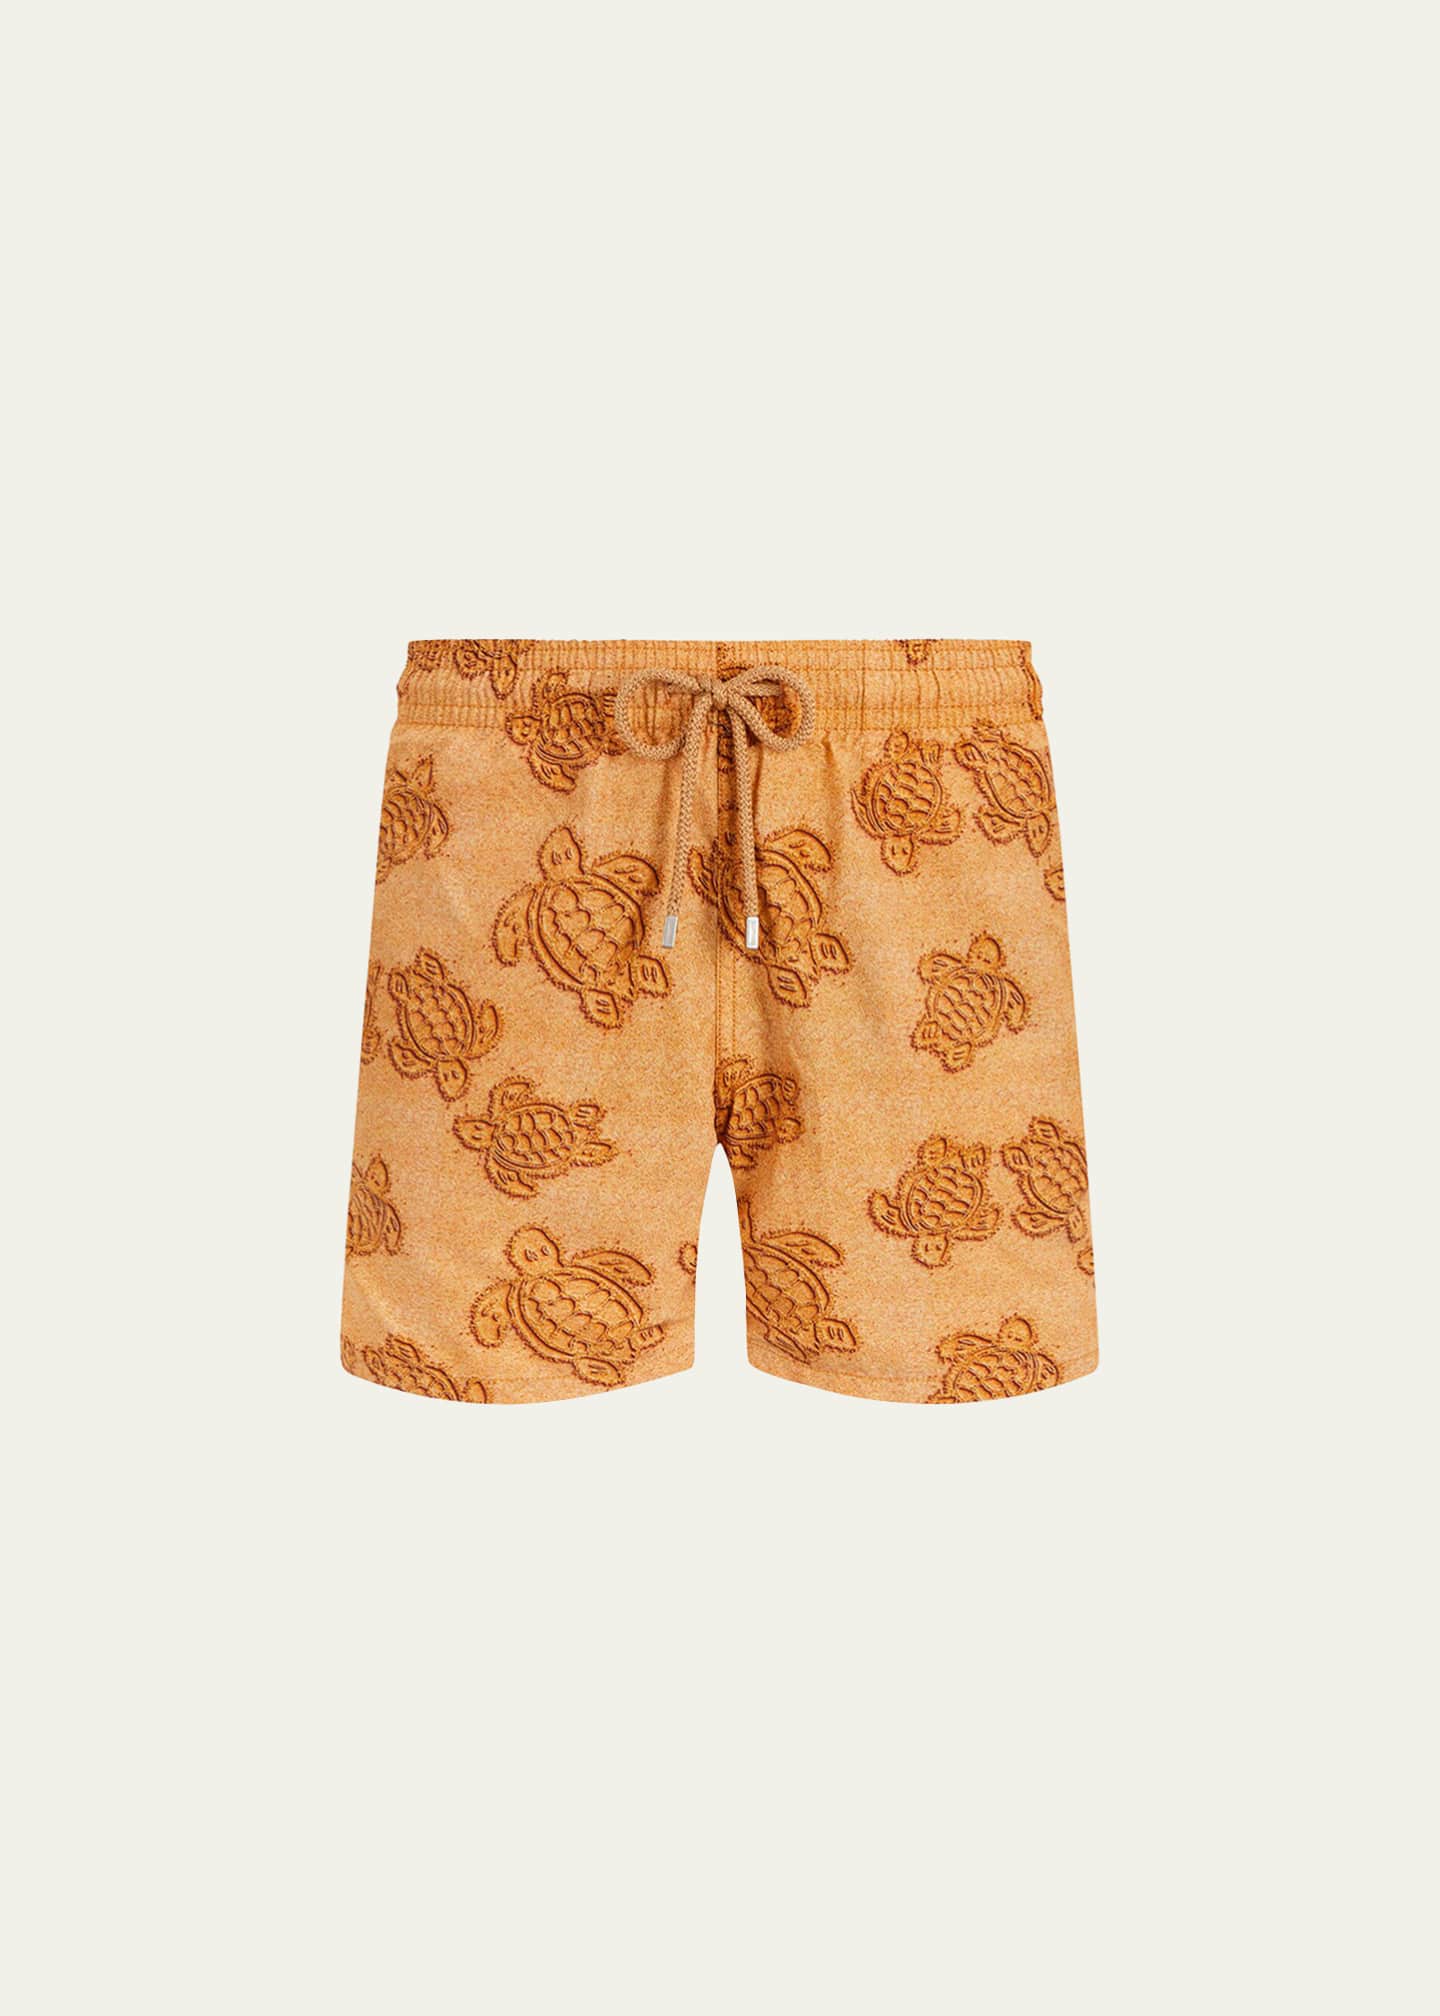 Louis Vuitton swim trunks short  Swim trunks, Trunks, Mens swim trunks